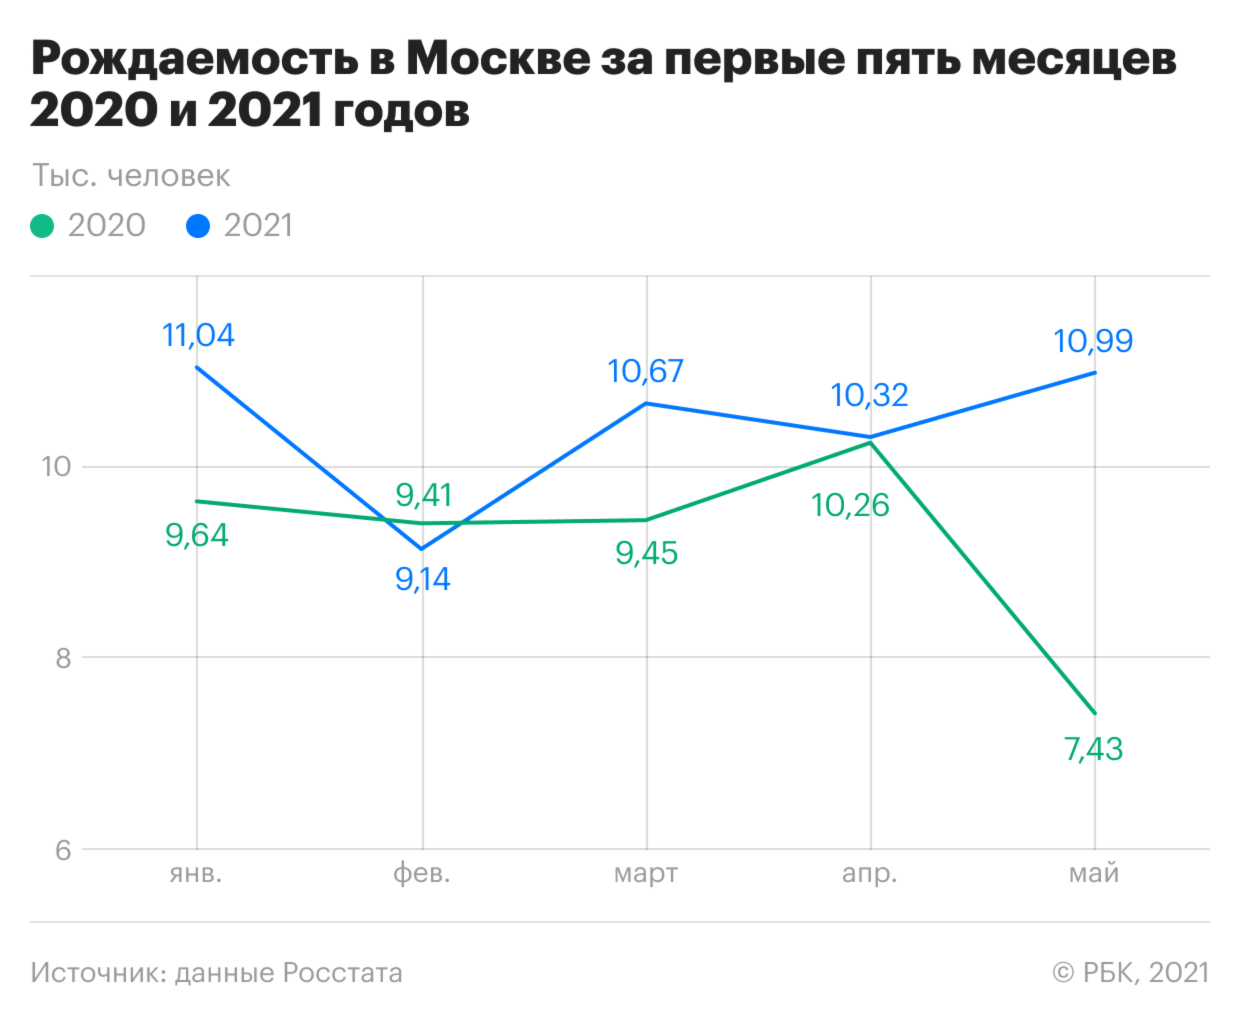 Как рождаемость в Москве обогнала прошлогоднюю. Инфографика